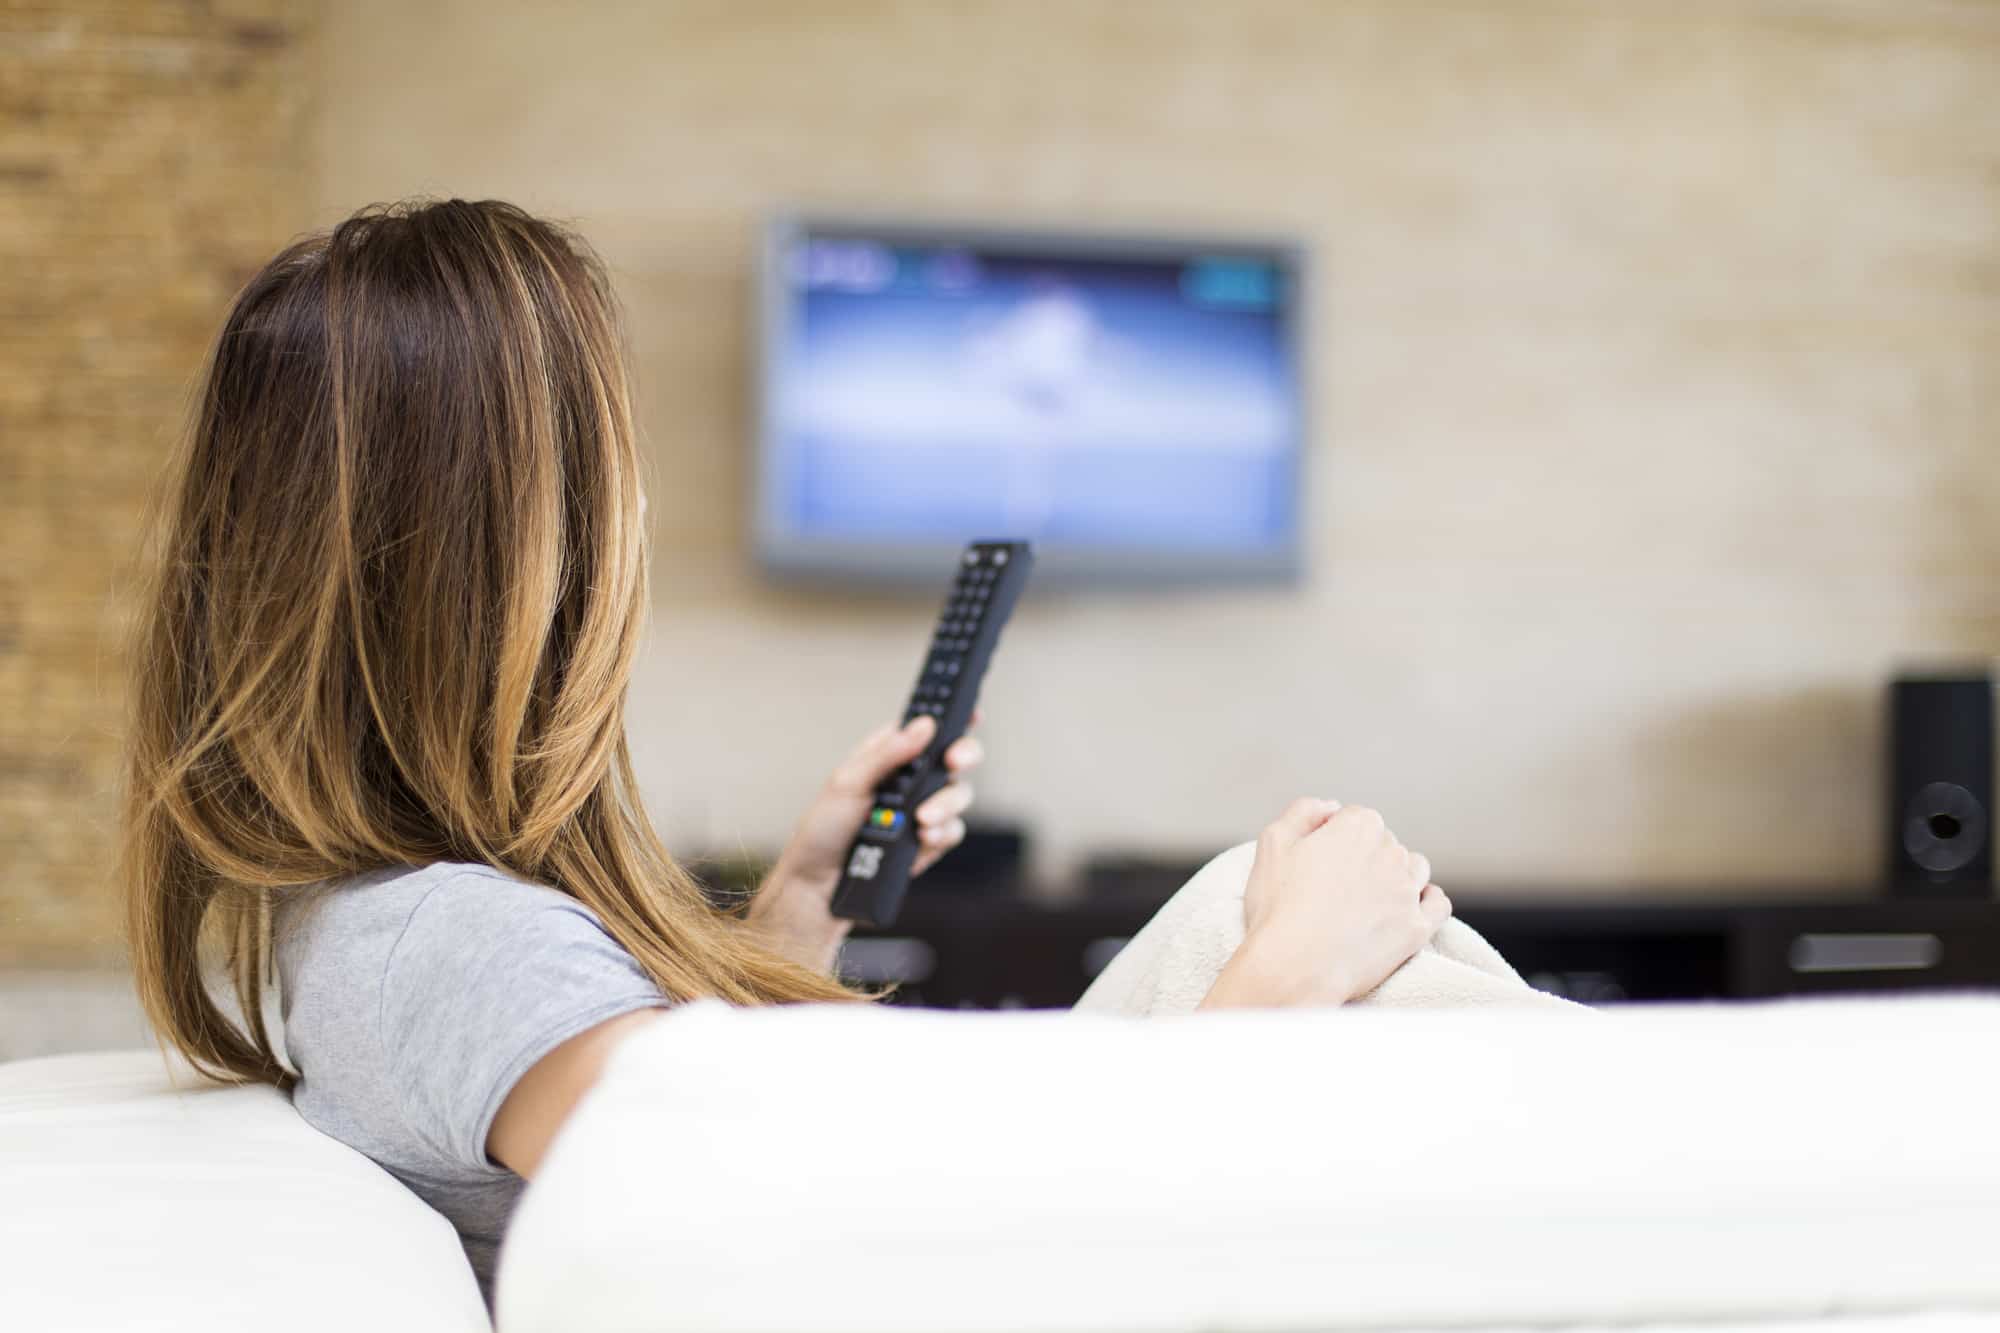 Scegliere le offerte Internet + TV conviene: il risparmio è di 125 euro thumbnail